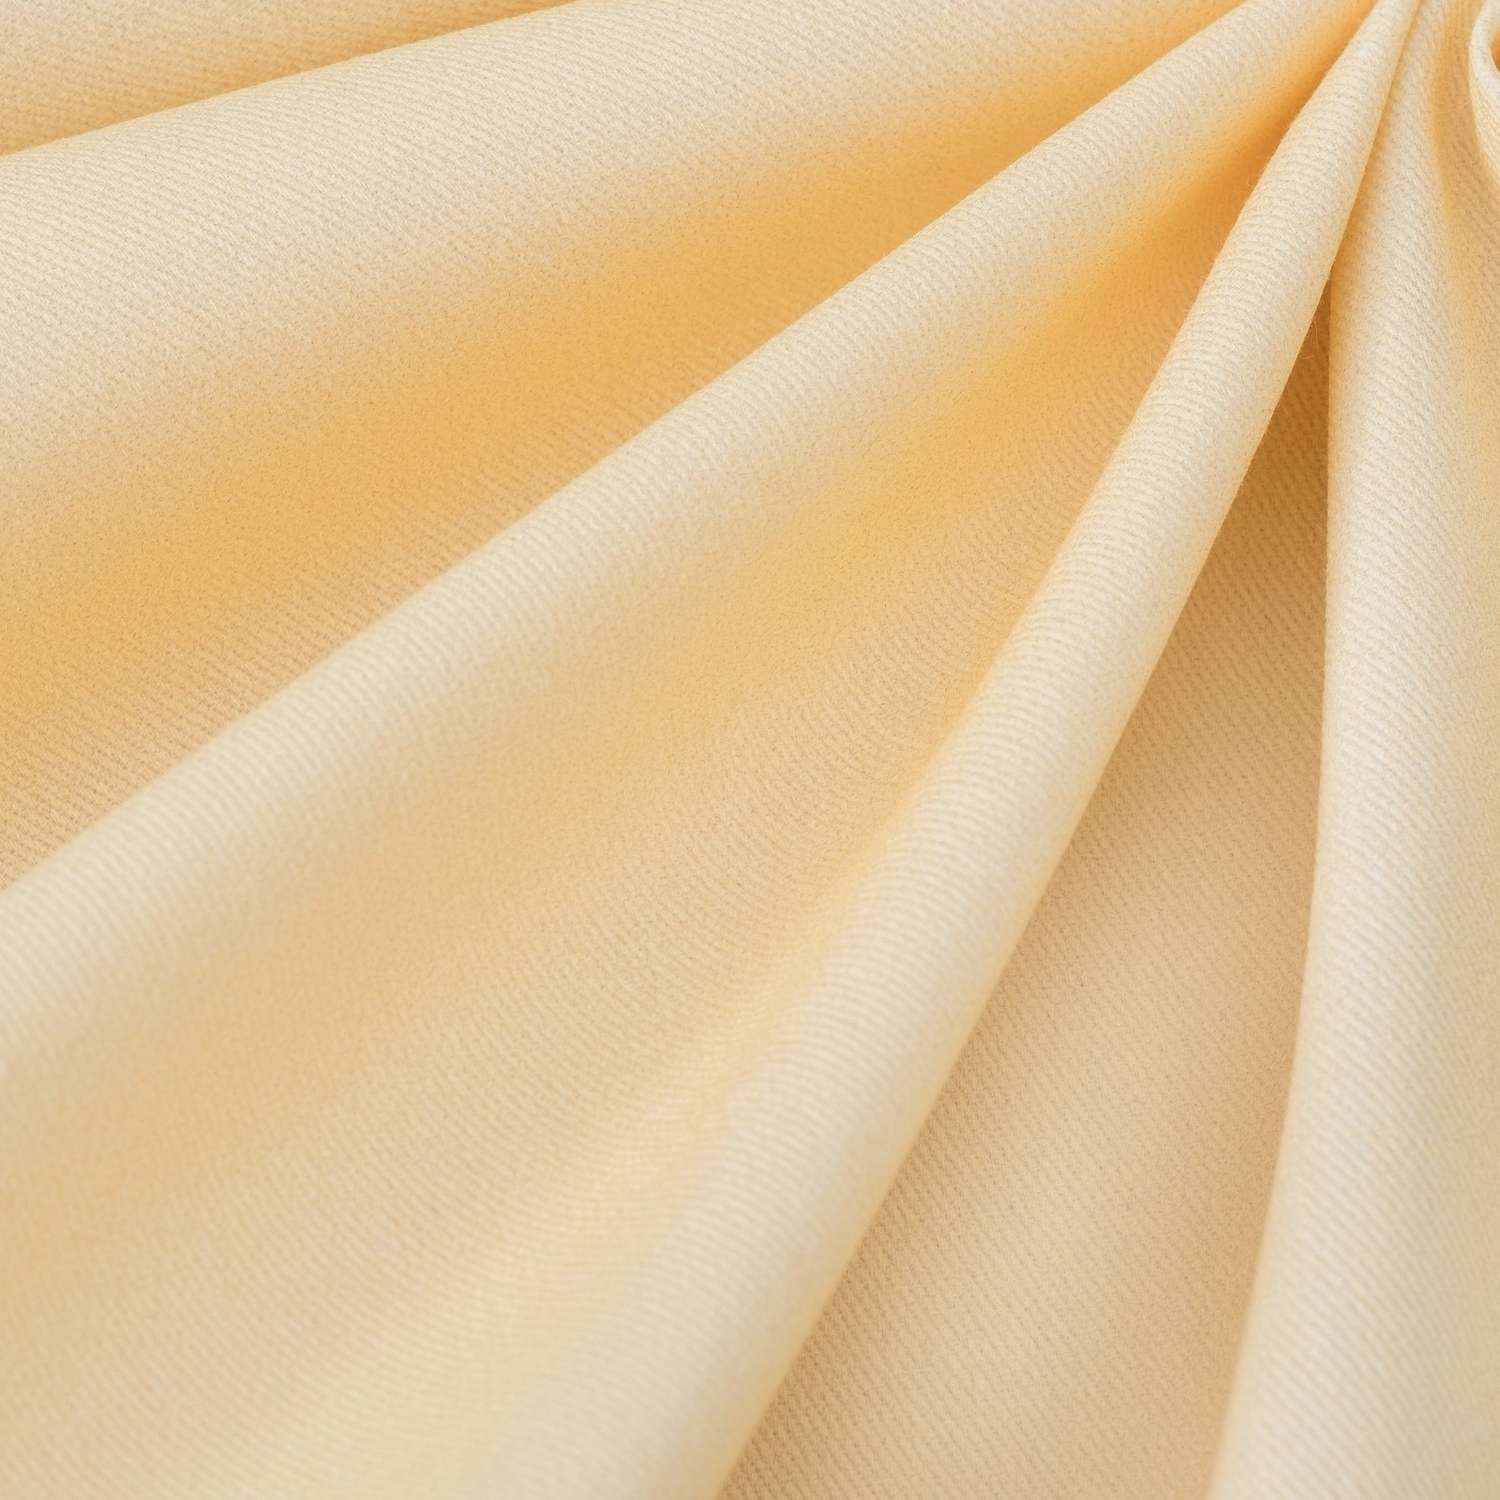 Скатерть Этель жёлто-коричневая 180х150 см саржа - фото 2